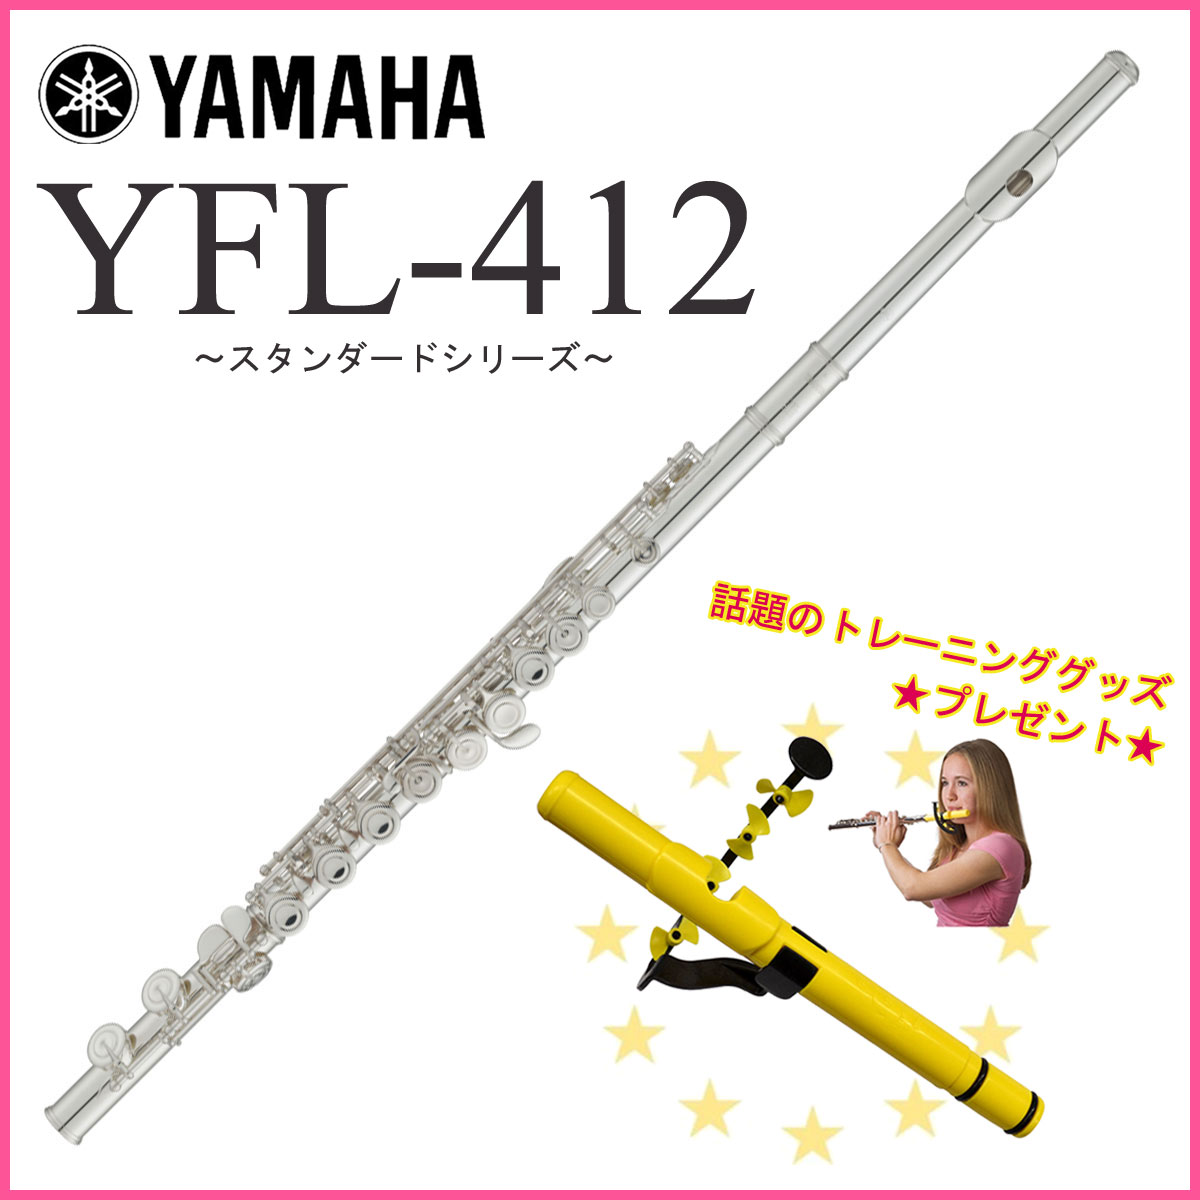 YAMAHA / YFL-412 ヤマハ スタンダード YFL412 Eメカ付き 管体銀製